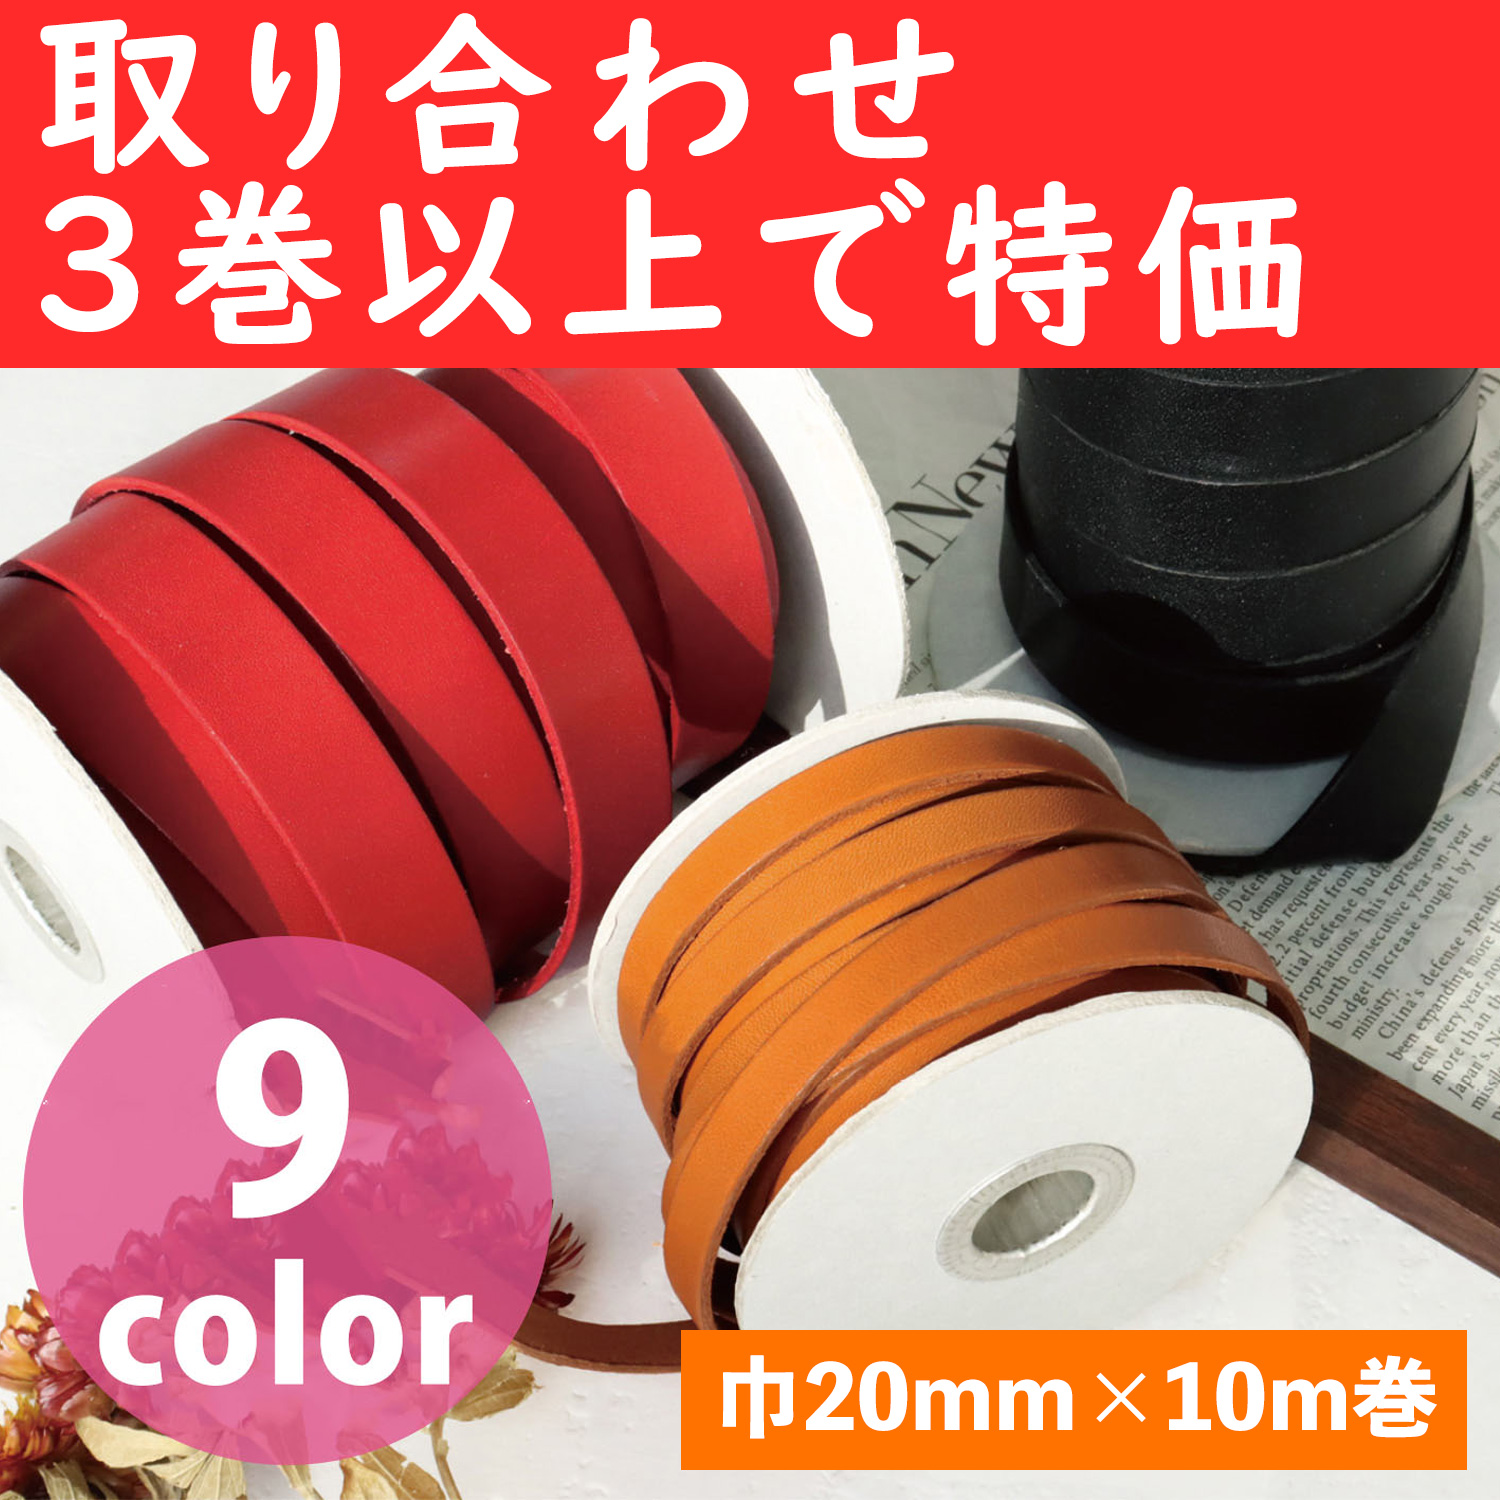 MTLS1020-OVER3 革テープ 巾約20mm×10m巻 色取り合わせ3巻以上 (巻)